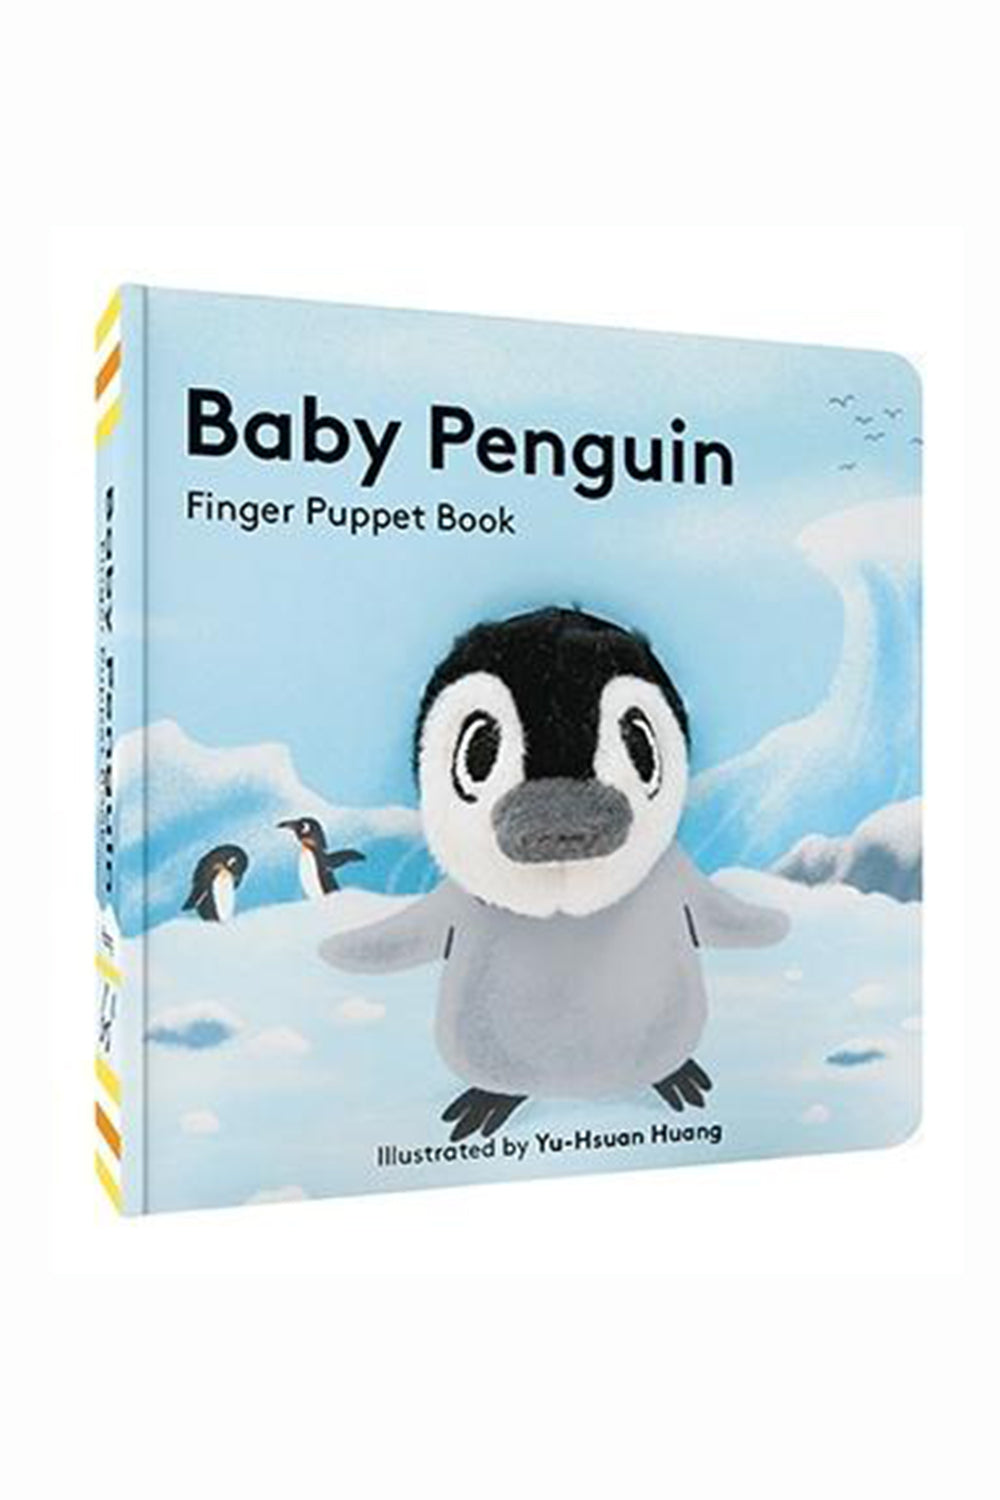 Finger Puppet Book - Baby Penguin